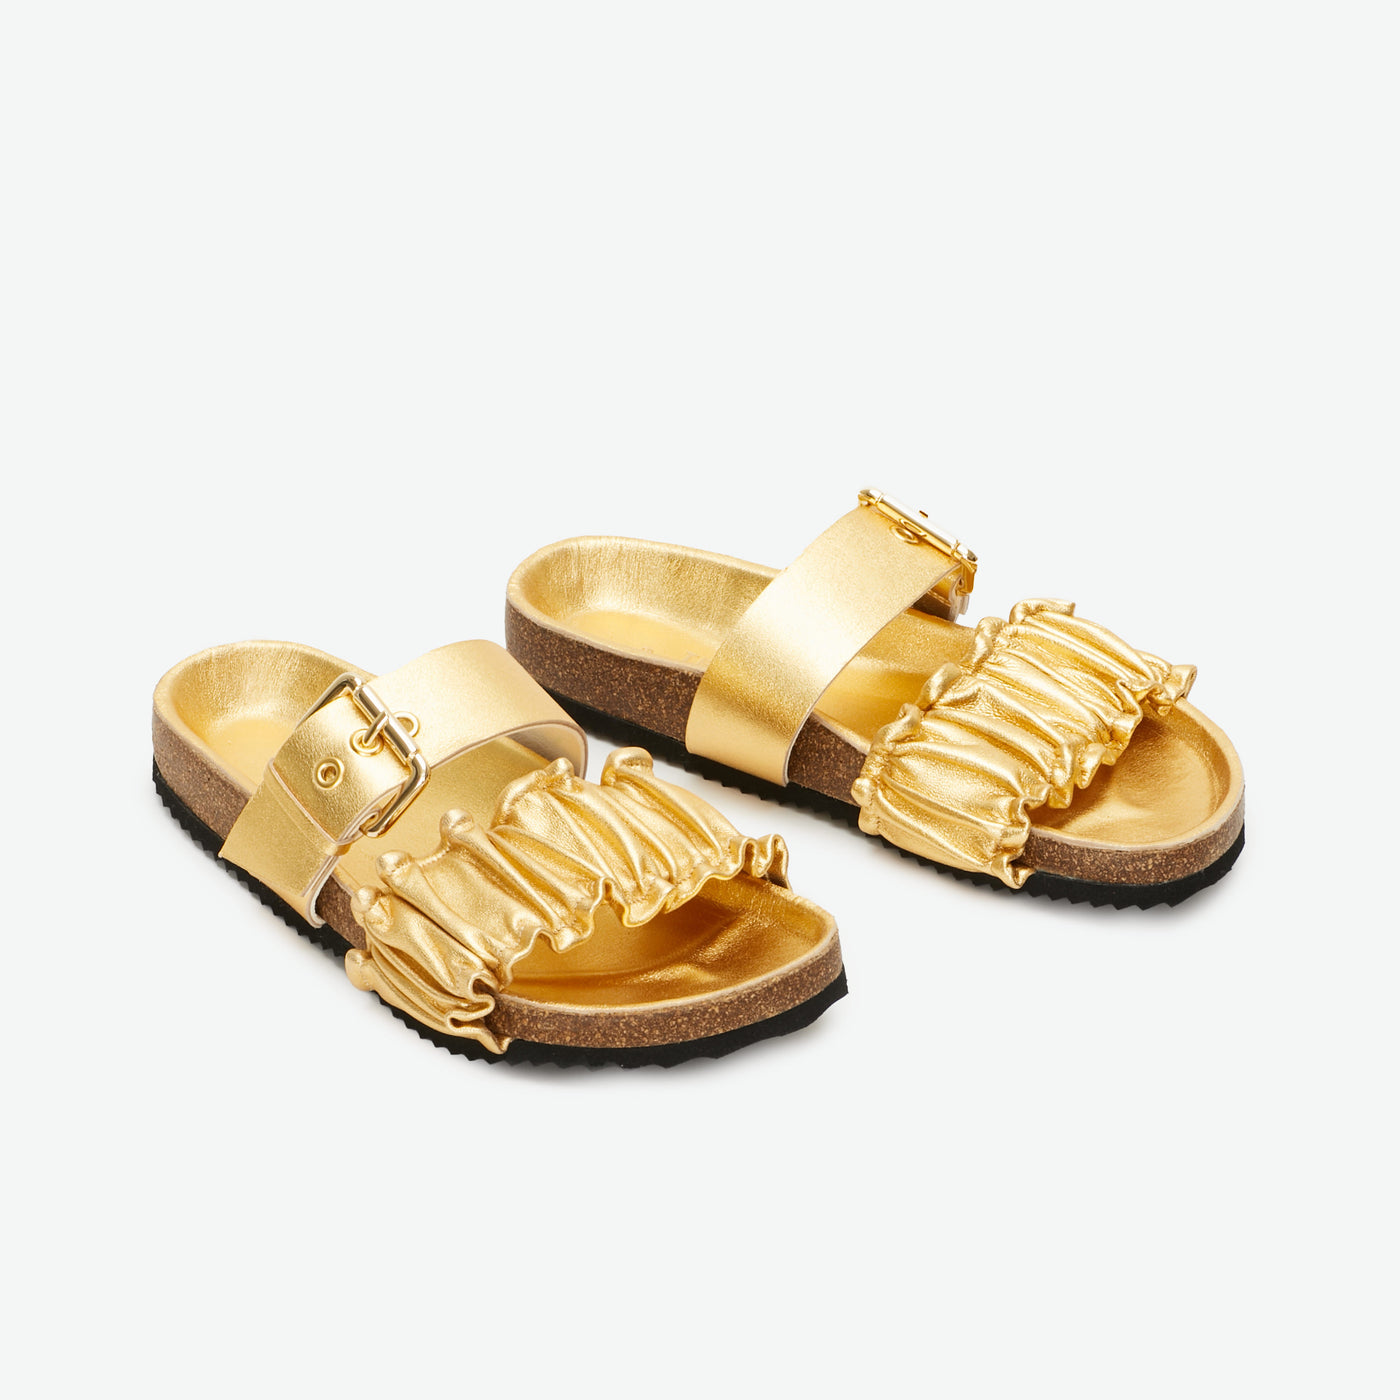 Iris fussbett sandal gold